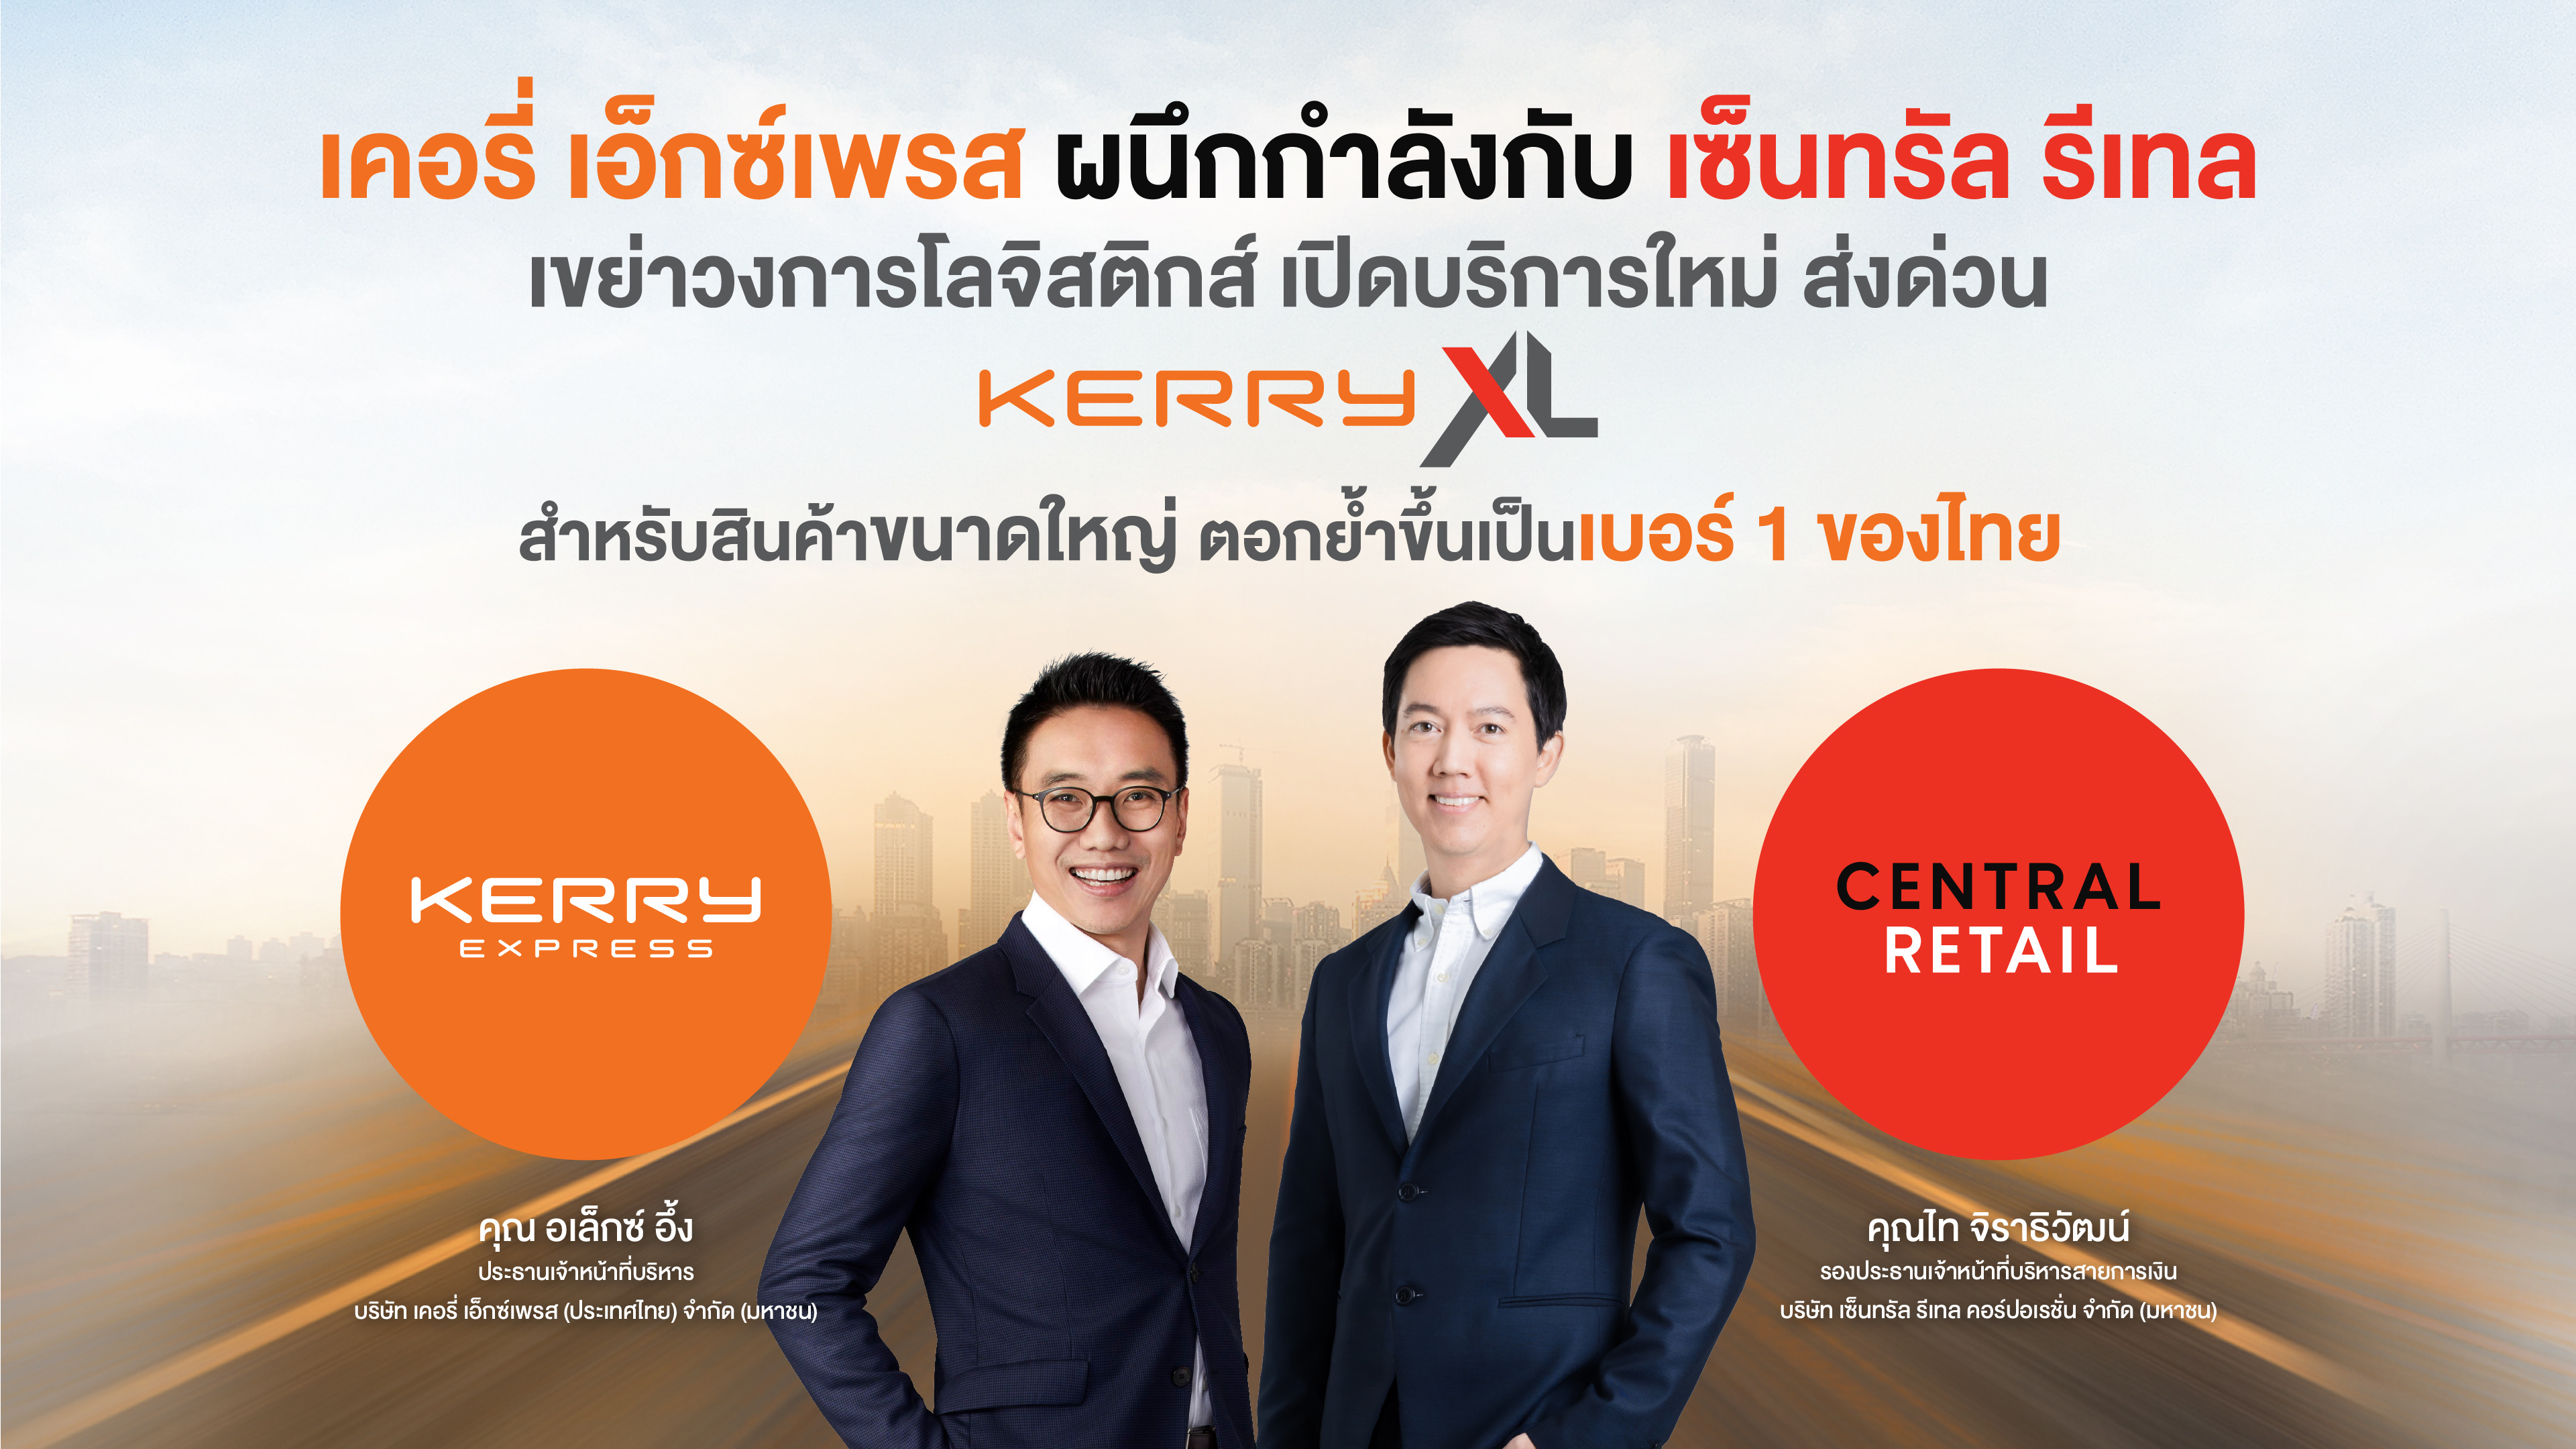 KERRY ผนึกกำลังกับ CRC เขย่าวงการโลจิสติกส์ เปิดบริการใหม่ ส่งด่วน Kerry XL สำหรับสินค้าขนาดใหญ่ ตอกย้ำขึ้นเป็นเบอร์ 1 ของไทย